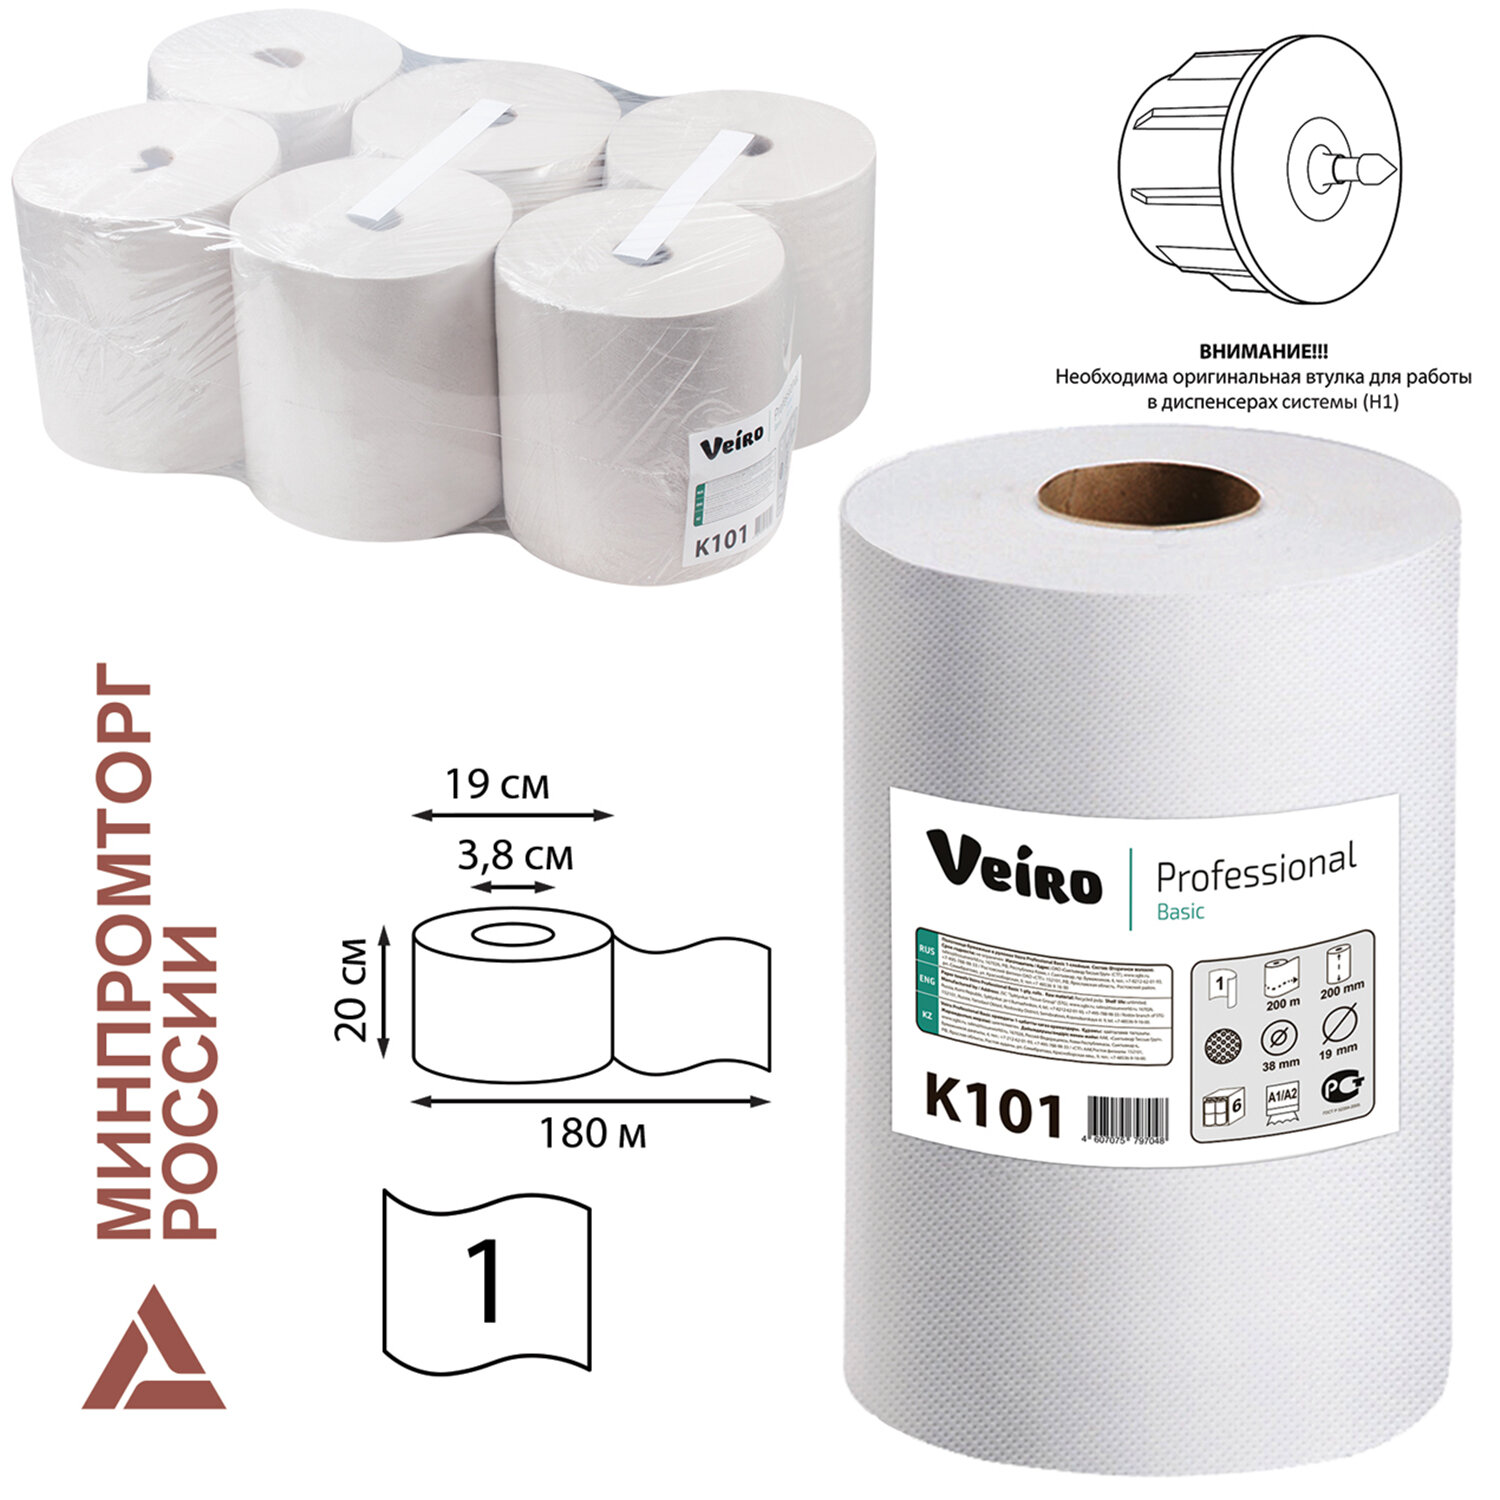 Полотенца бумажные Veiro Basic, слоев: 1, длина 180 м, натуральный, 6 шт. (K101)